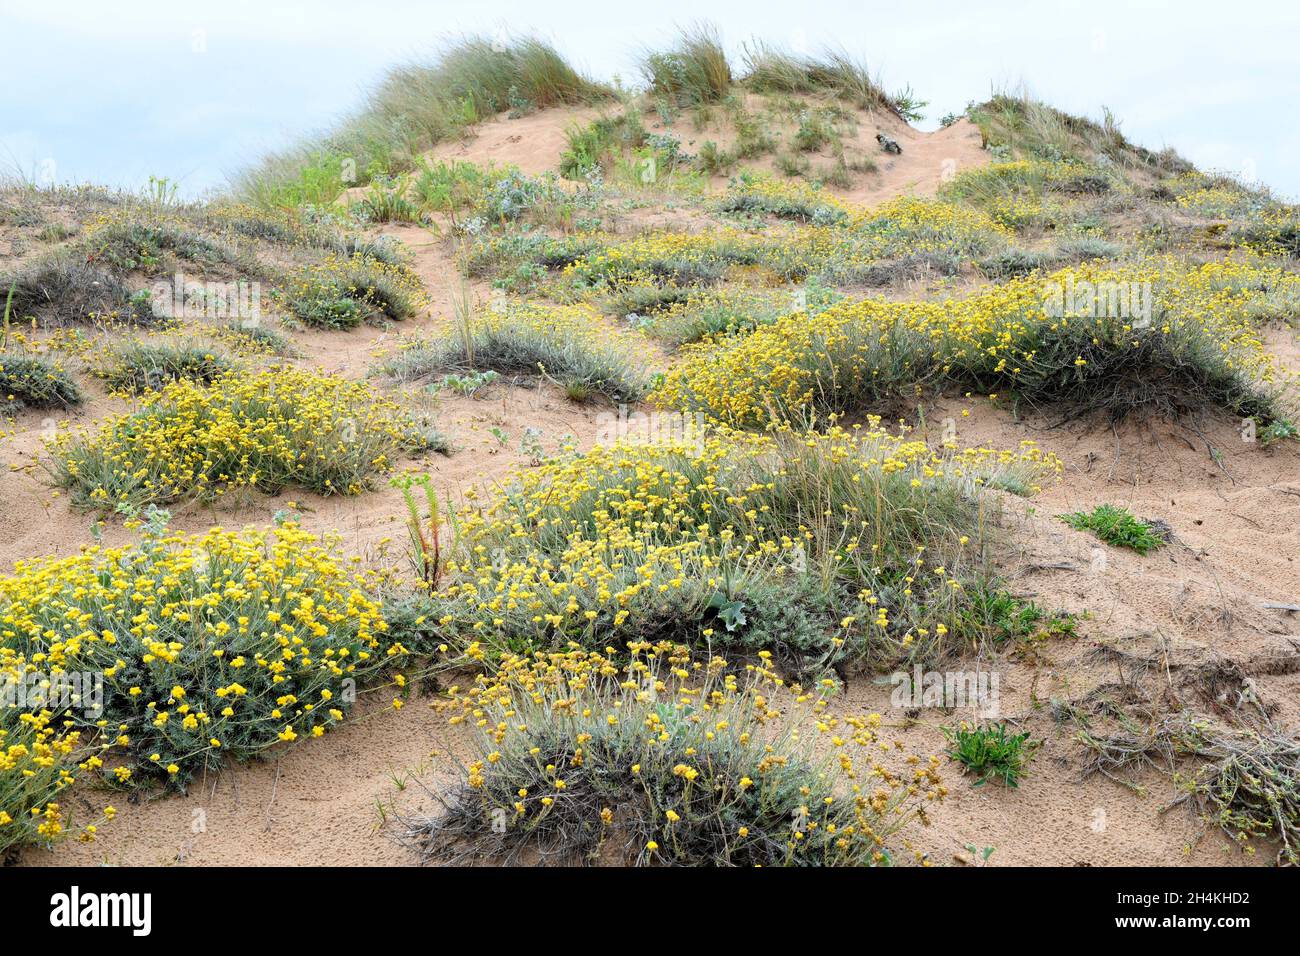 La fragola mediterranea (Helichrysum stoechas) è una pianta annuale o perenne originaria delle coste sabbiose del bacino mediterraneo. Questa foto è stata scattata Foto Stock